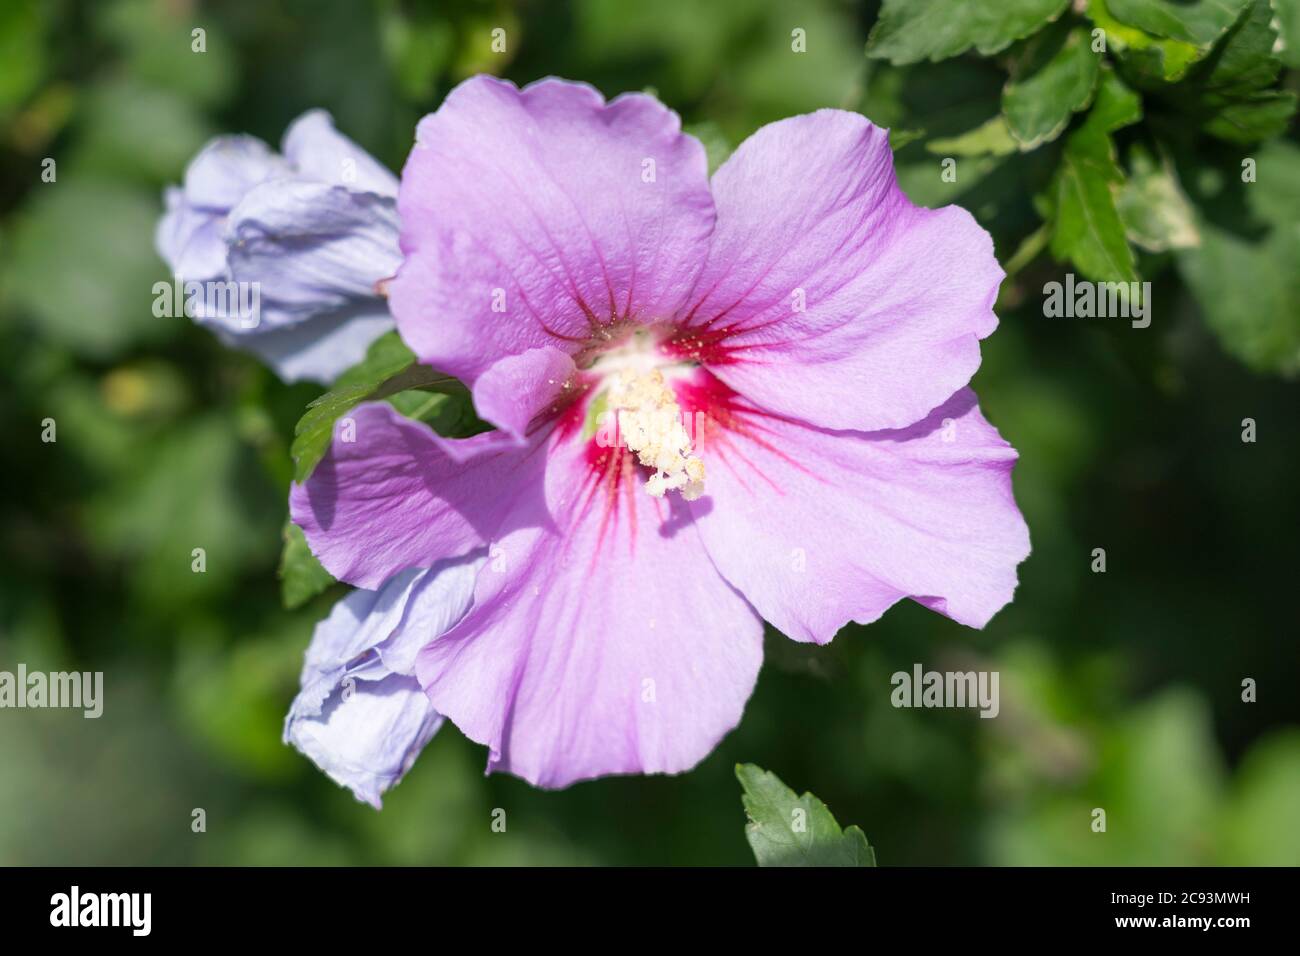 Un primo piano su Hibiscus syriacus L. (Rosa di Shannon o arbusto Althea) con grandi fiori rosa a forma di tromba con un occhio centrale rosso-viola scuro Foto Stock